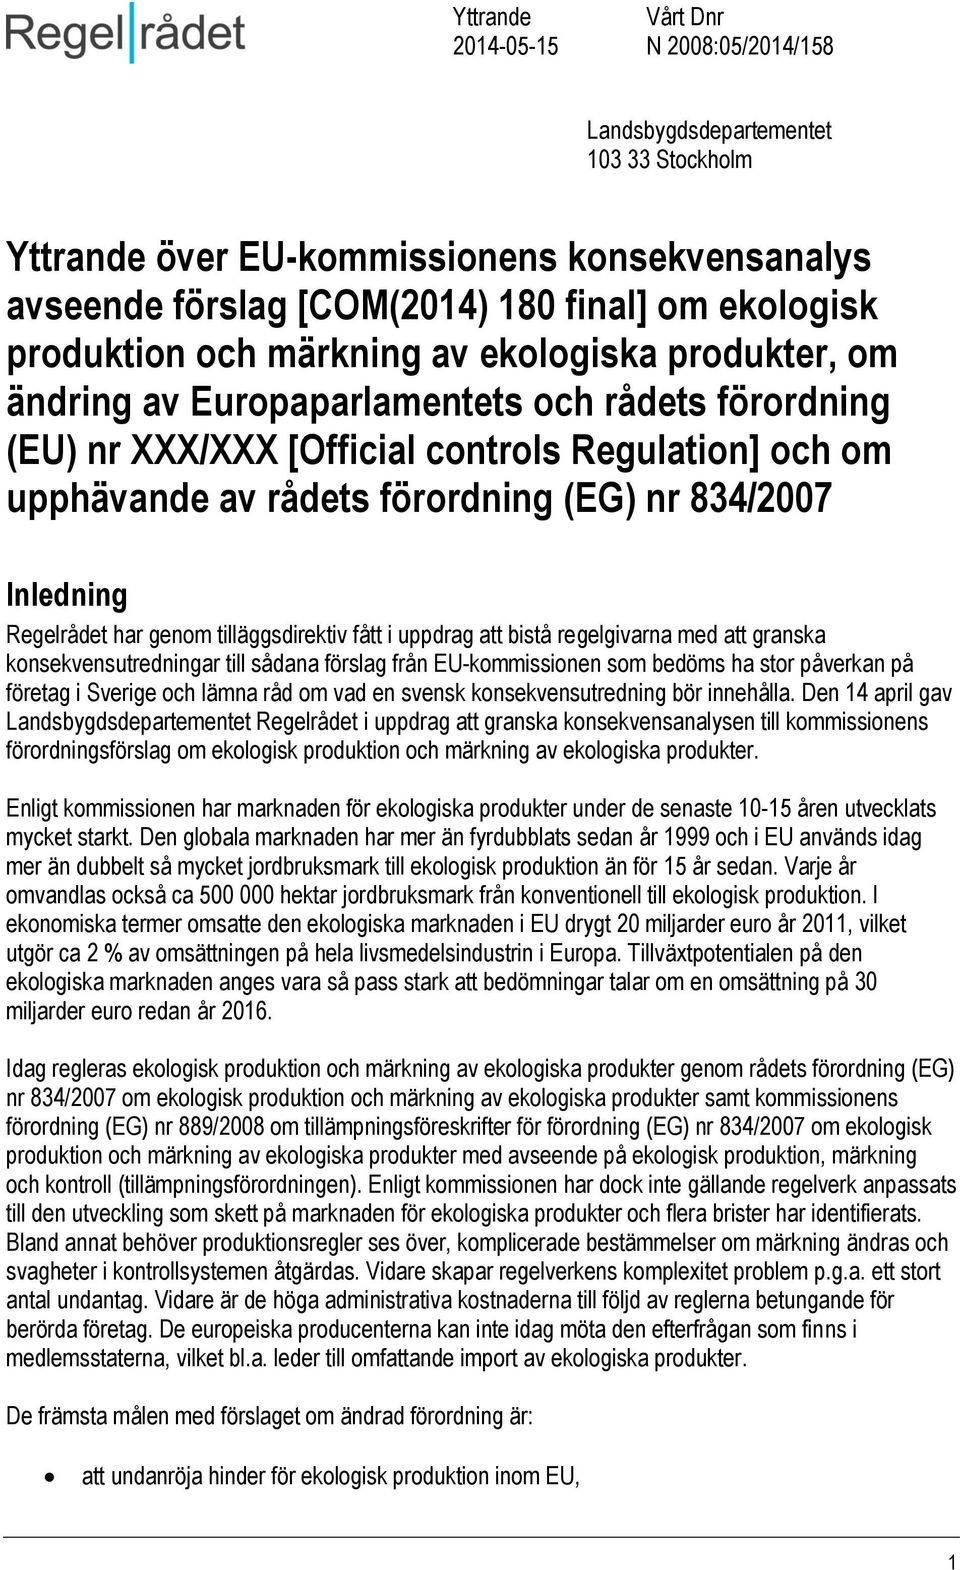 tilläggsdirektiv fått i uppdrag att bistå regelgivarna med att granska konsekvensutredningar till sådana förslag från EU-kommissionen som bedöms ha stor påverkan på företag i Sverige och lämna råd om